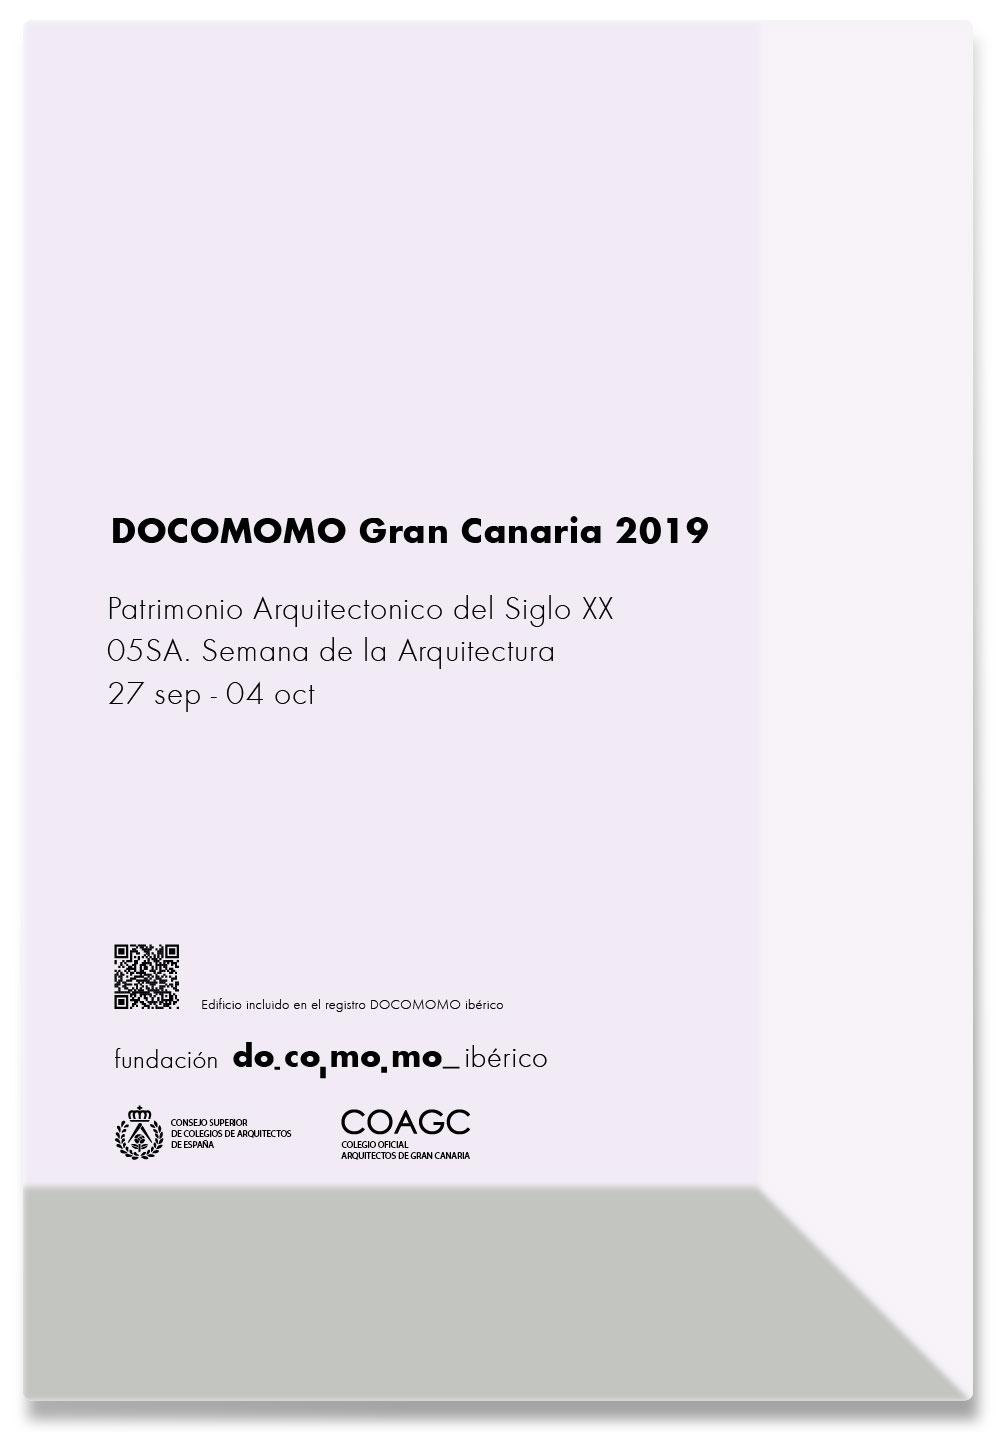 DOCOMOMO Gran Canaria 2019